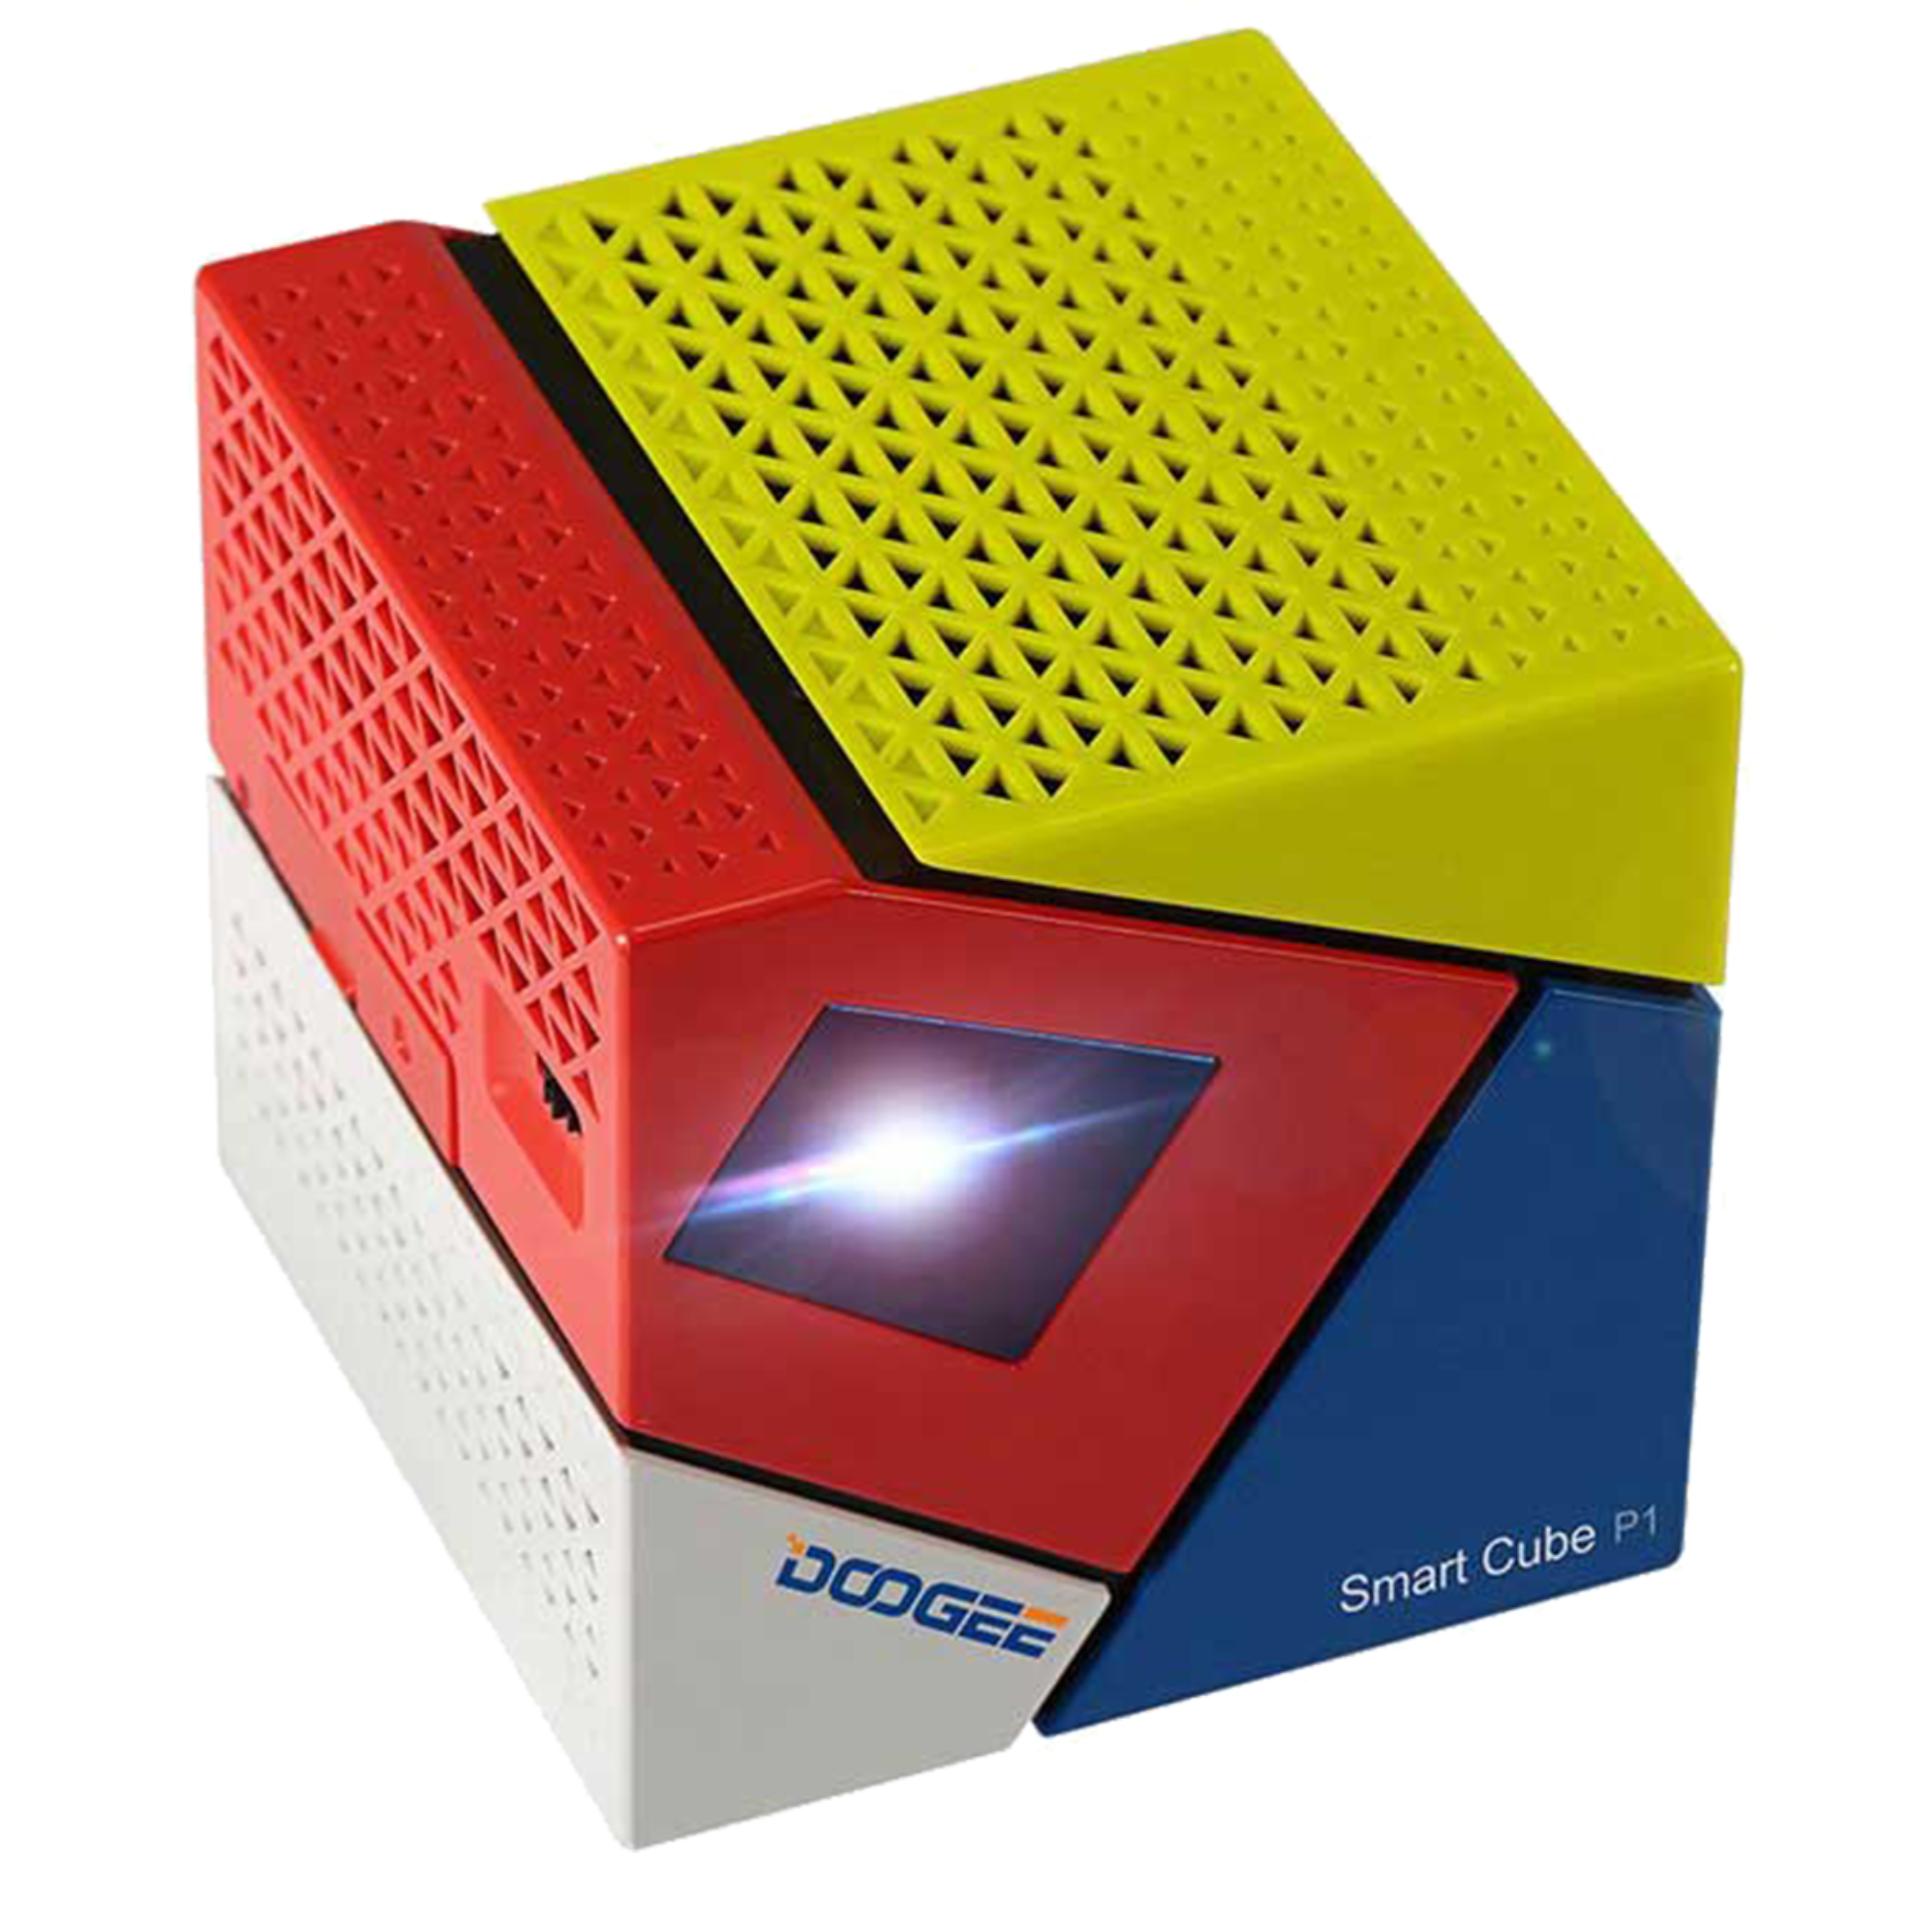 Máy chiếu Mini projector Android TV Smart Box Smart Cube P1 Quad core 4 nhân bluetooth (Xanh đỏ trắng)